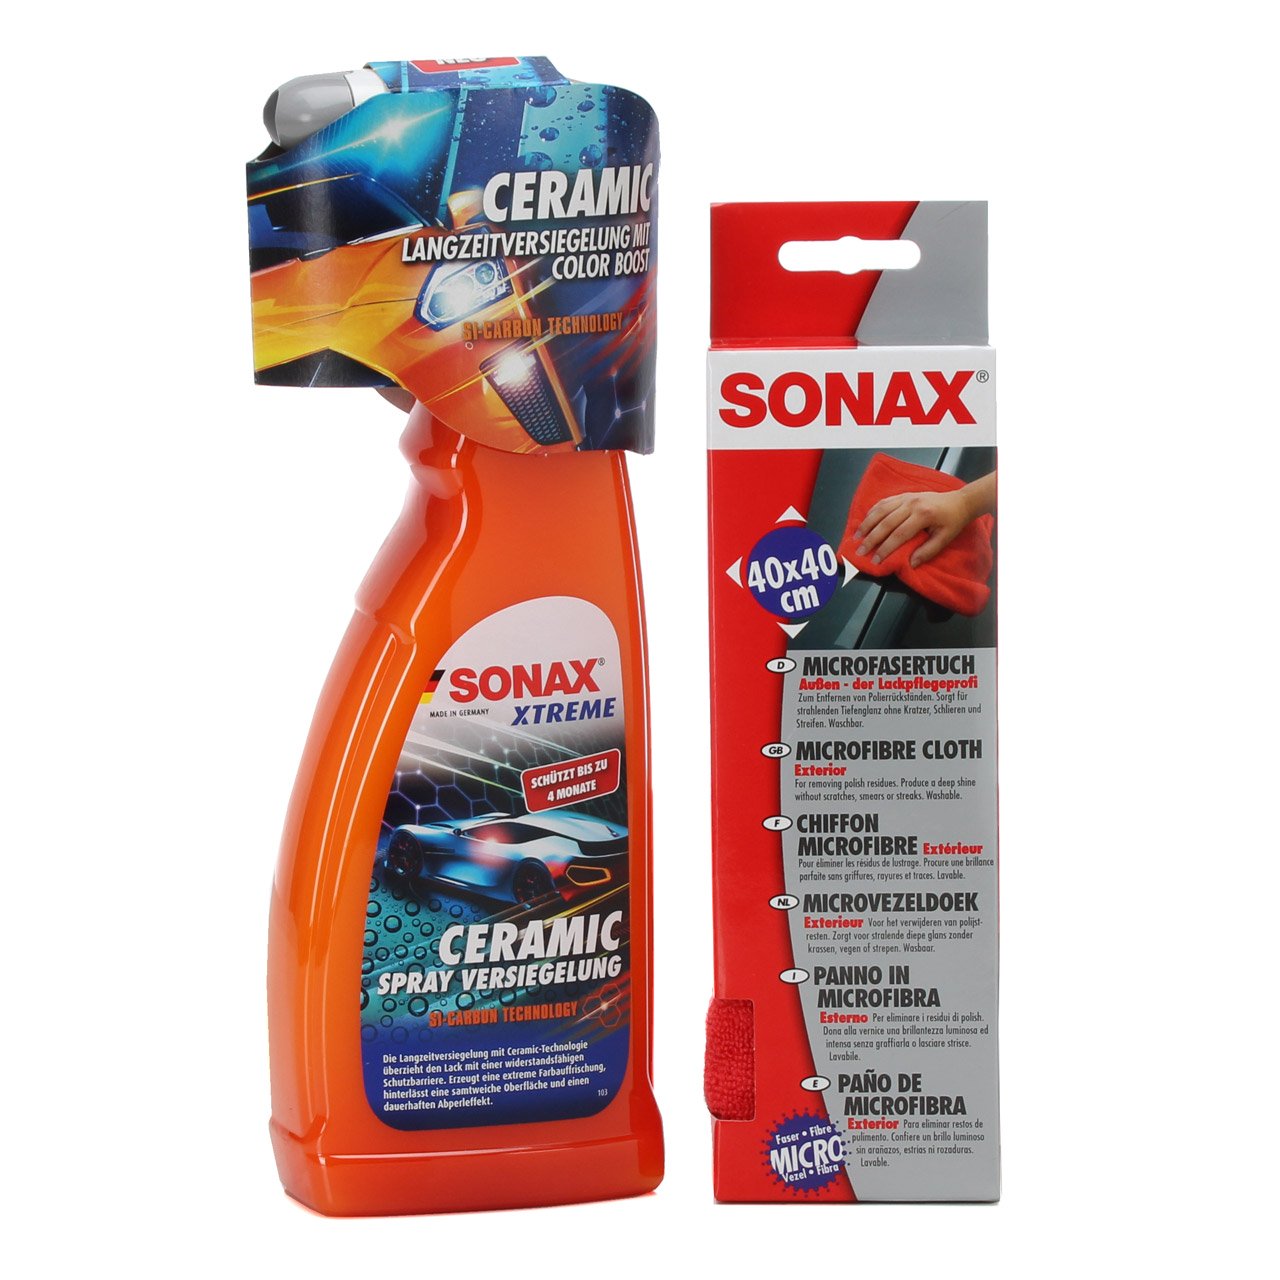 SONAX XTREME Ceramic Spray Versiegelung Lackversiegelung 750ml + Microfasertuch